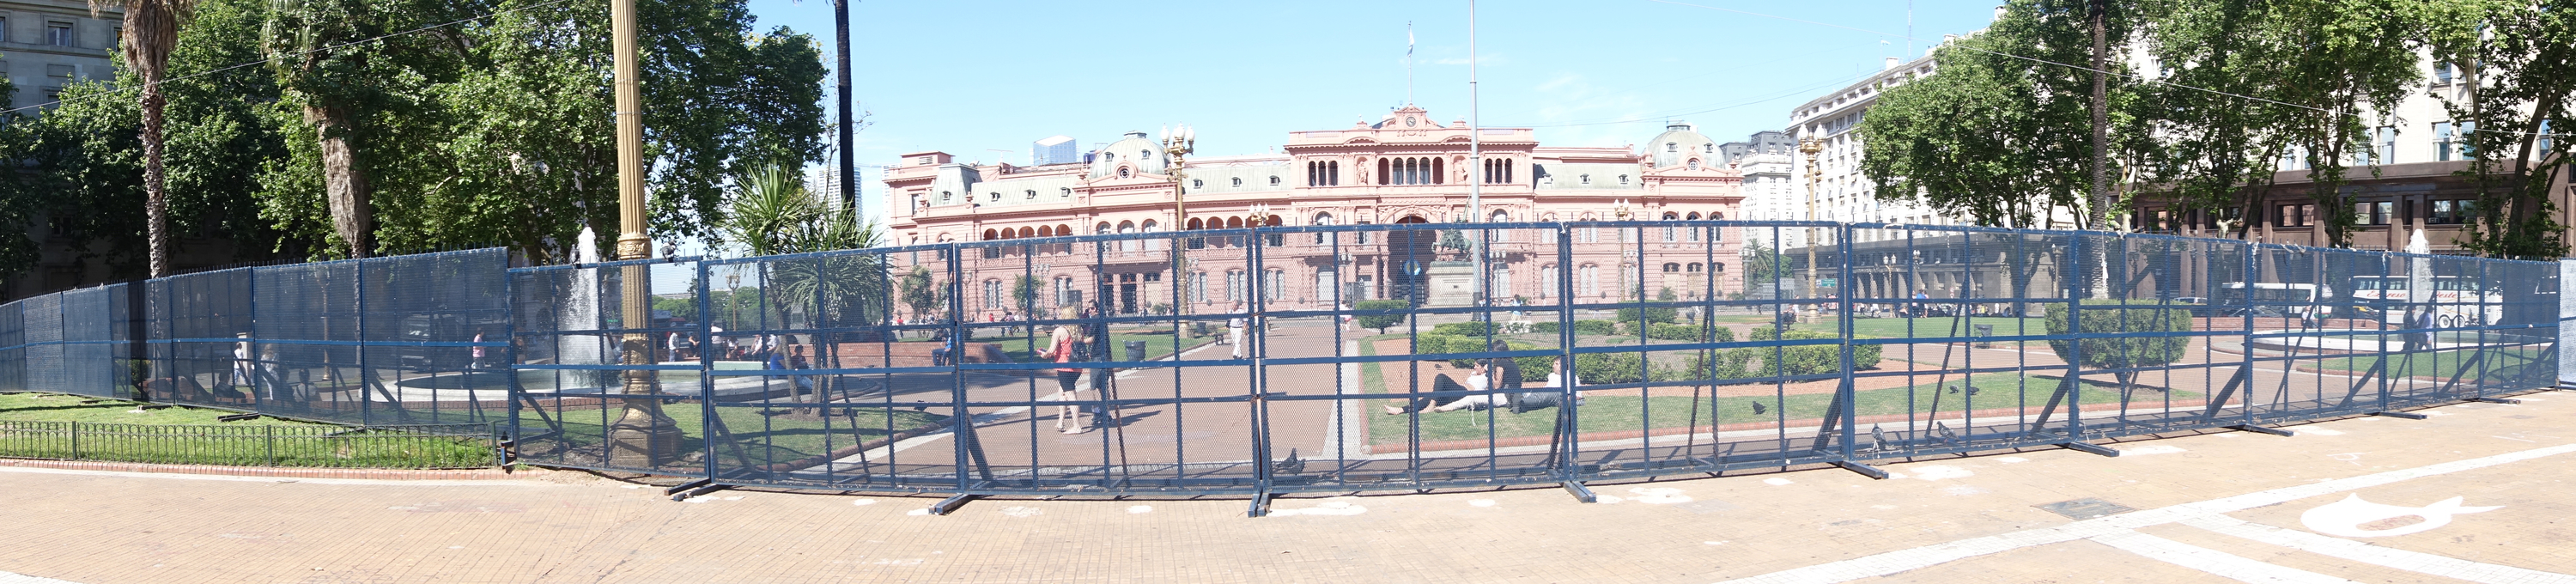 阿根廷總統府，也跟台灣一樣，常用拒馬圍起來，舉辦「國際拒馬節」。